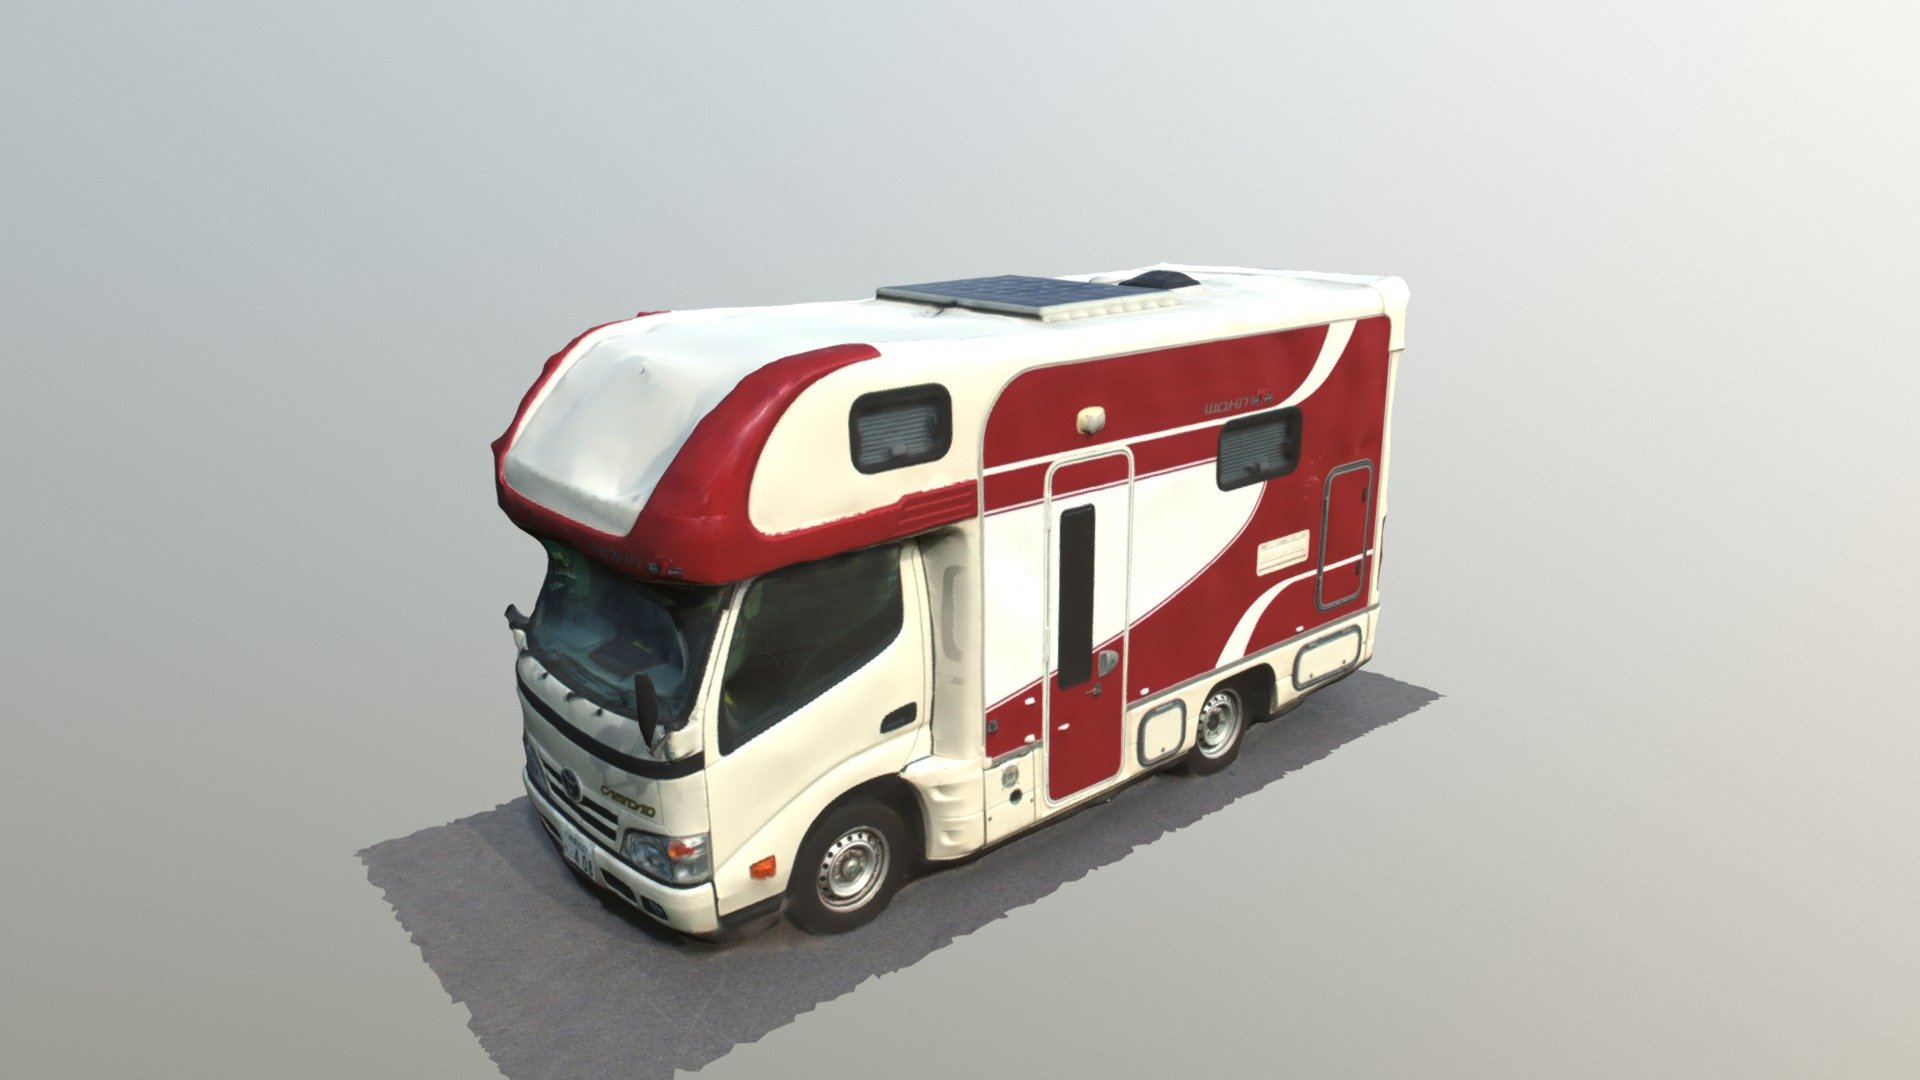 ドローンで空撮。
その写真を元に
3Ｄ化
https://www.otsinternational.jp/otsrentacar/okinawa/car-selection/camping-car/ - OTSrentacar camper - 3D model by katubotatu 3d model